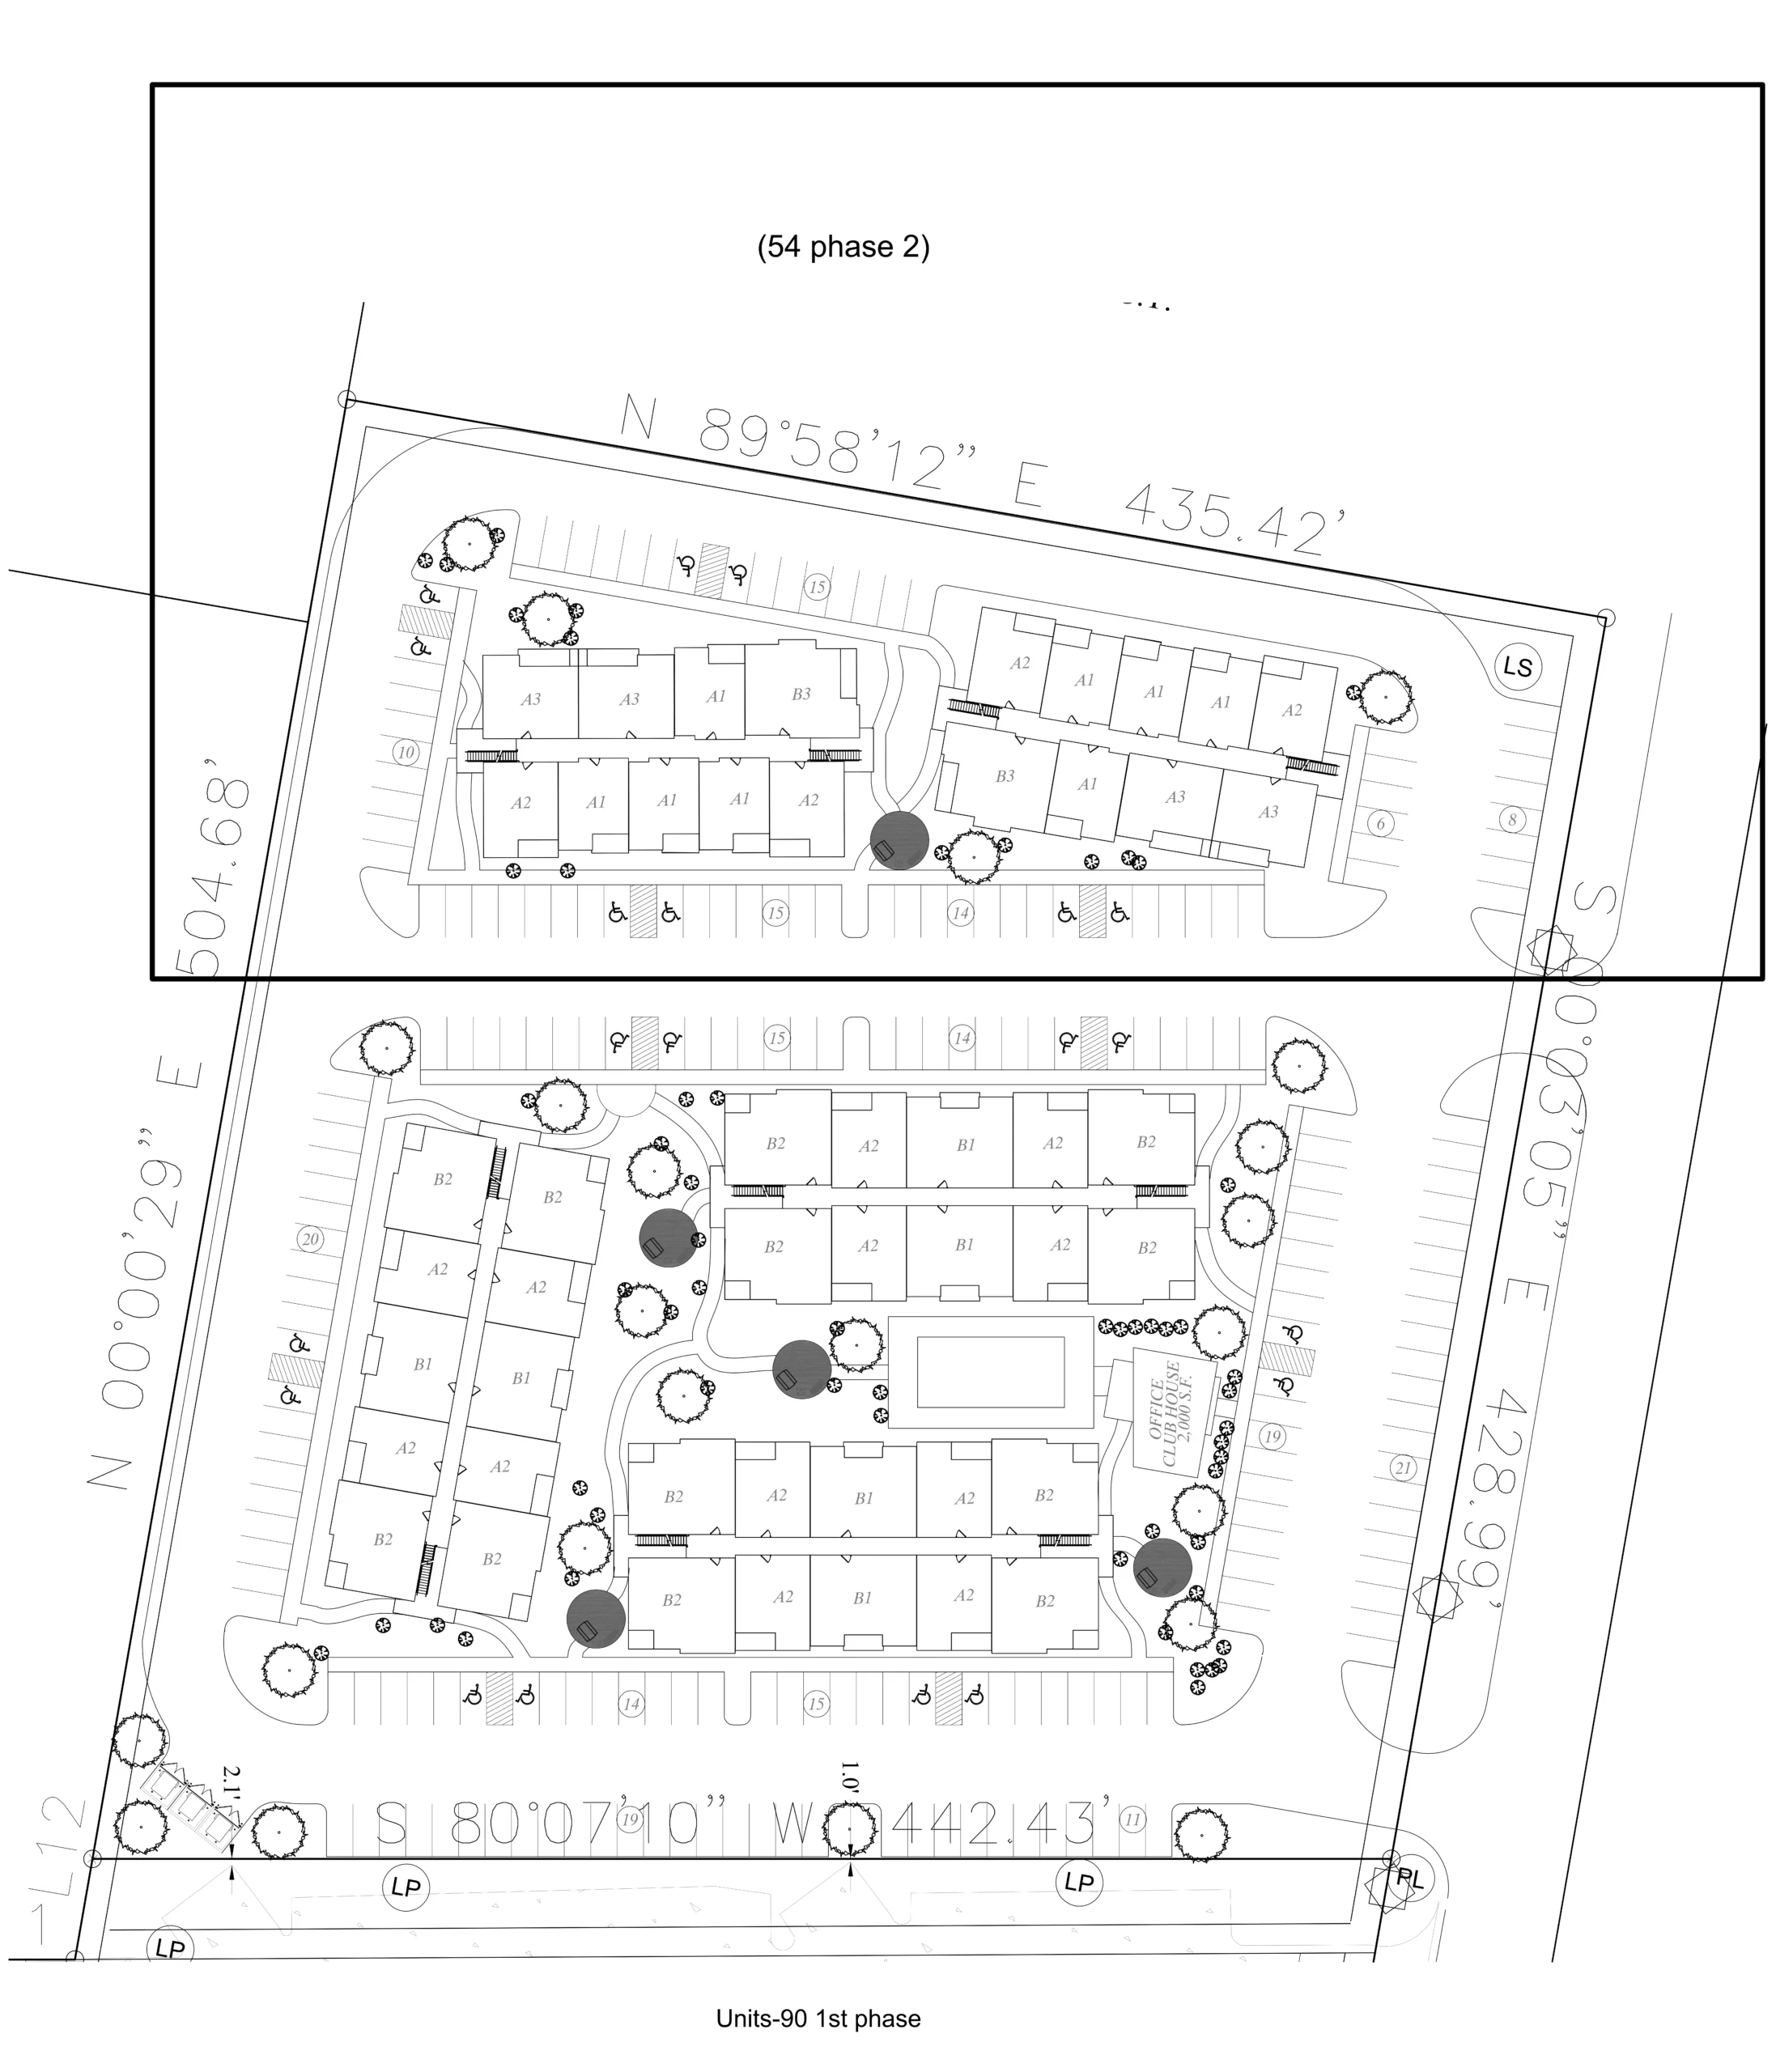 Pin Oak Apartments Site Plan